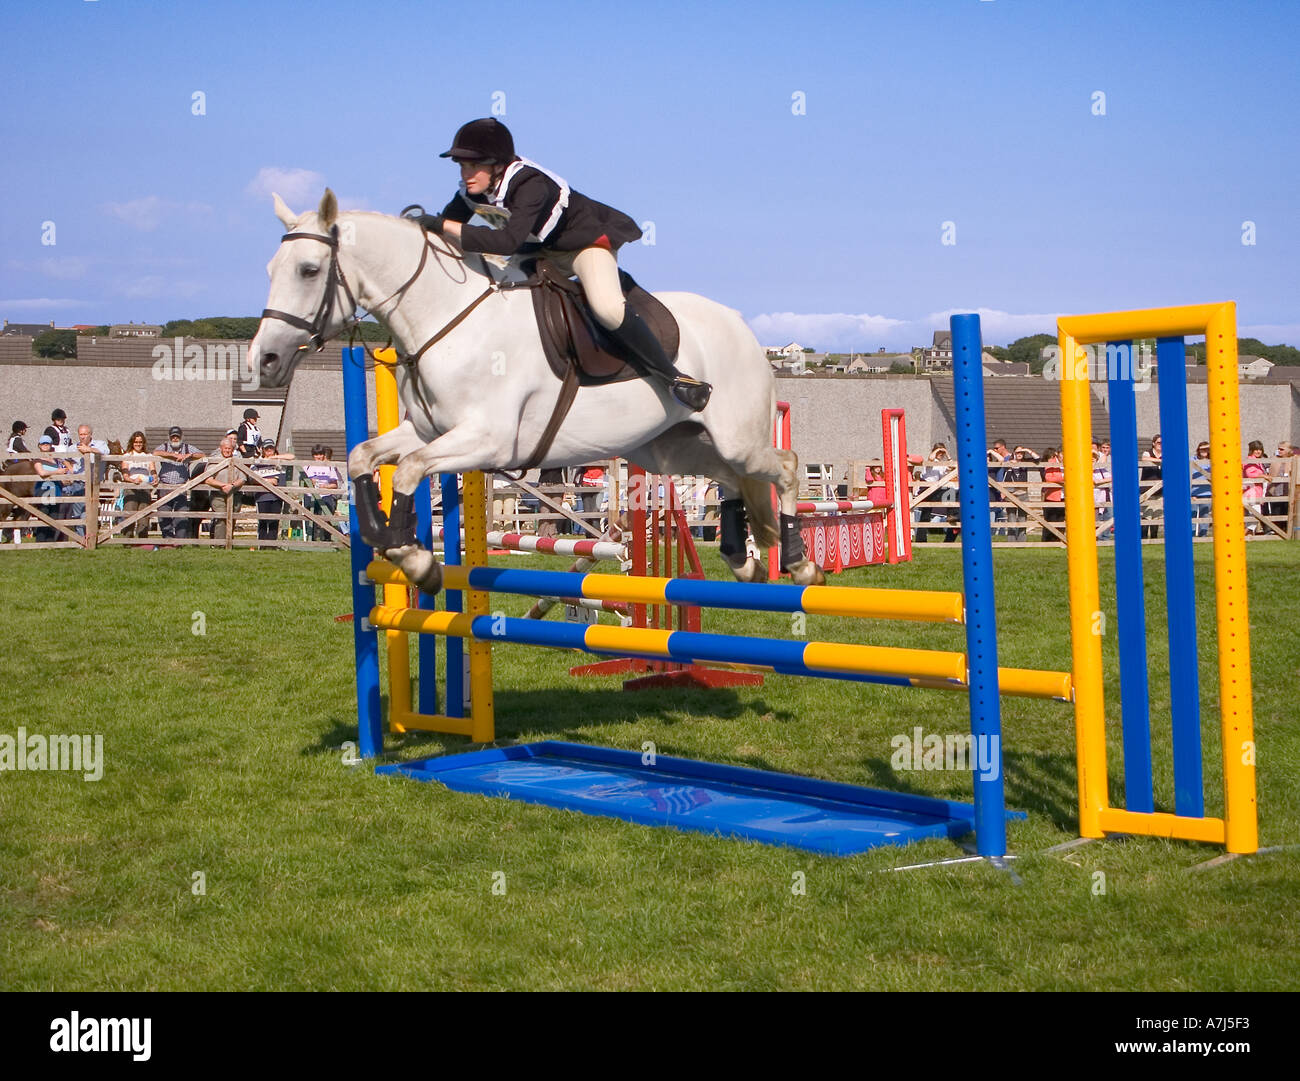 dh County Show KIRKWALL ORKNEY White Pony Pferderennen Wettbewerb Event über Zaun Boden Ring Mädchen uk springen Arena Teenager Sport Teenager Stockfoto